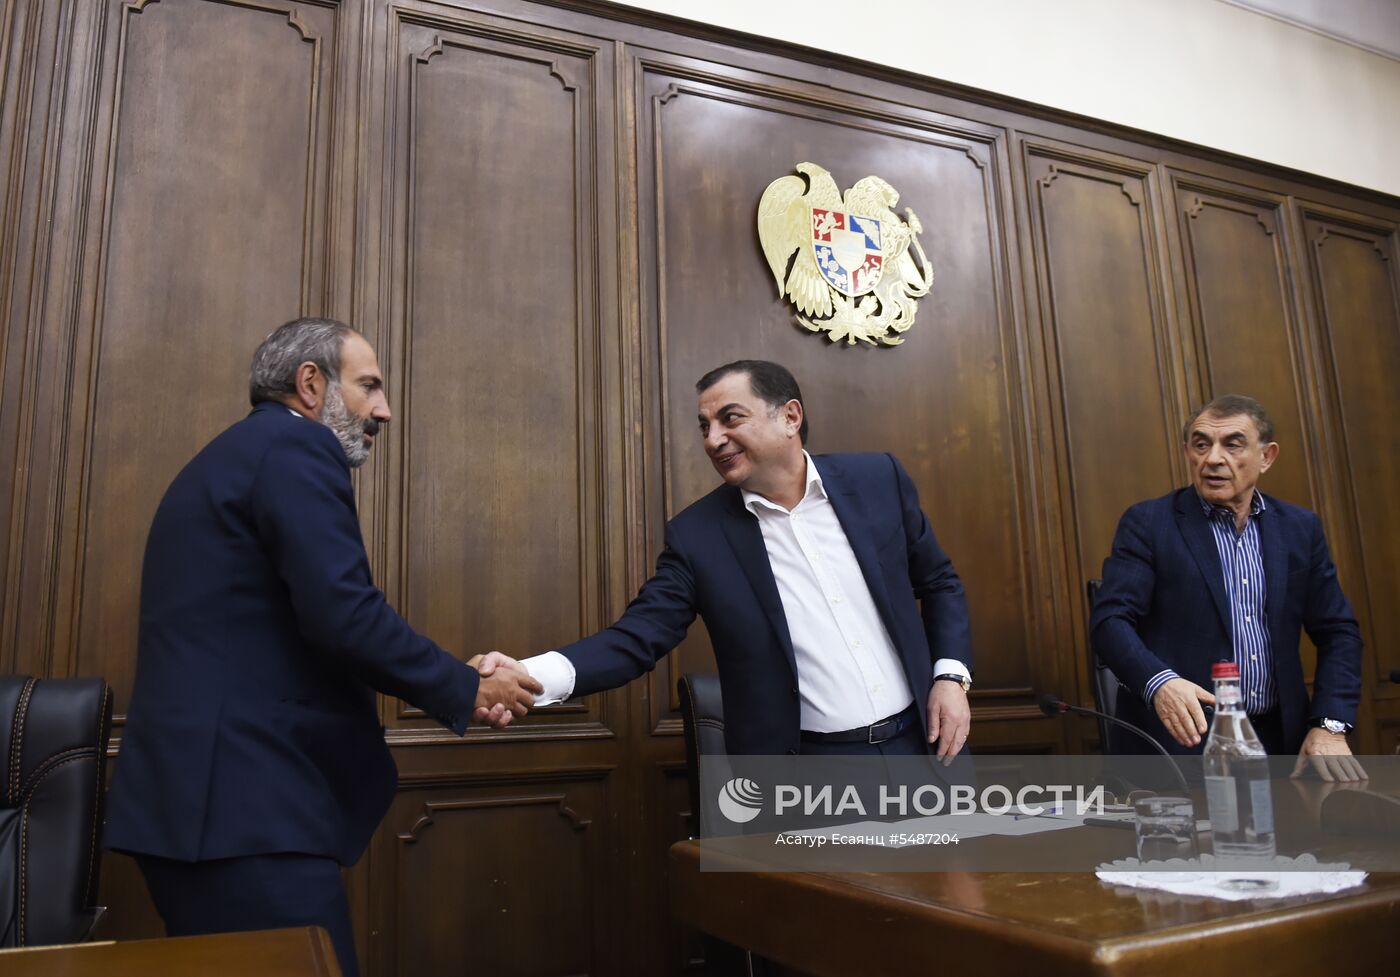 Встречи представителей оппозиционной партии "Елк" с представителями фракций парламента Армении